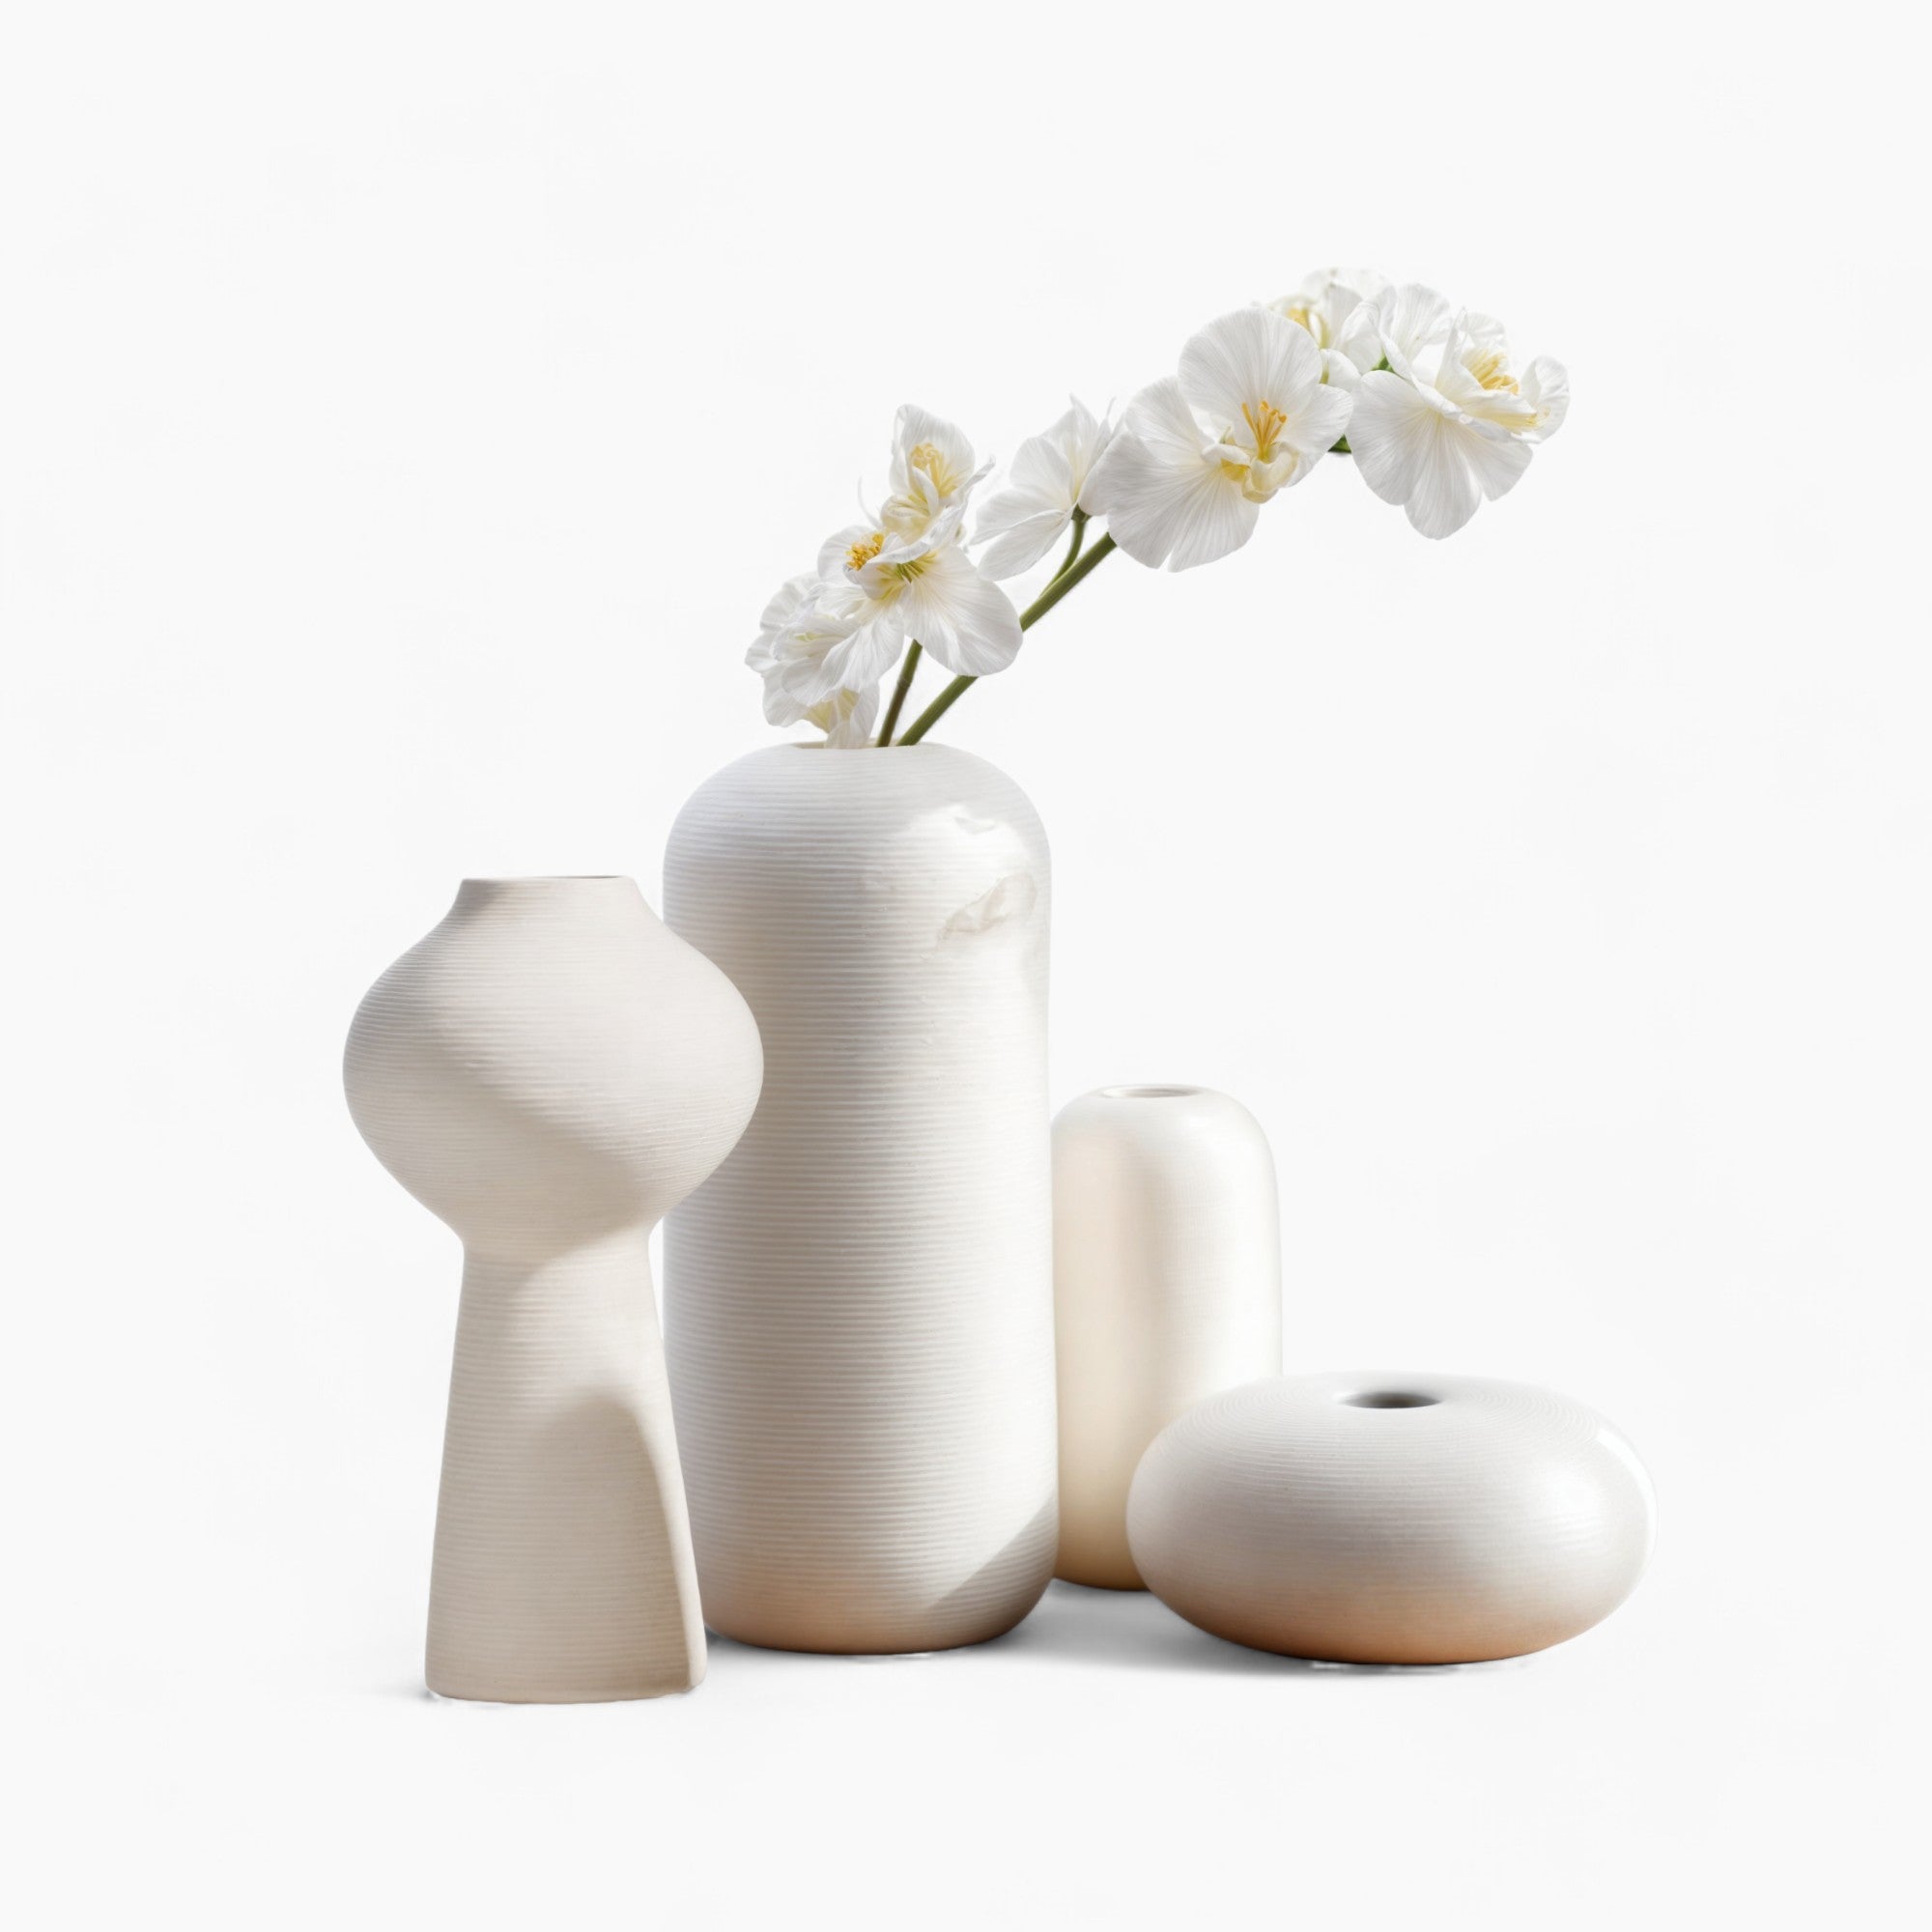 Handgefertigte Keramikvase Blanche mit dekorativer Ring-Skulptur, elegante Heimdekoration für Pflanzen oder Blumen, ganz in Weiß, handgefertigte Raffinesse